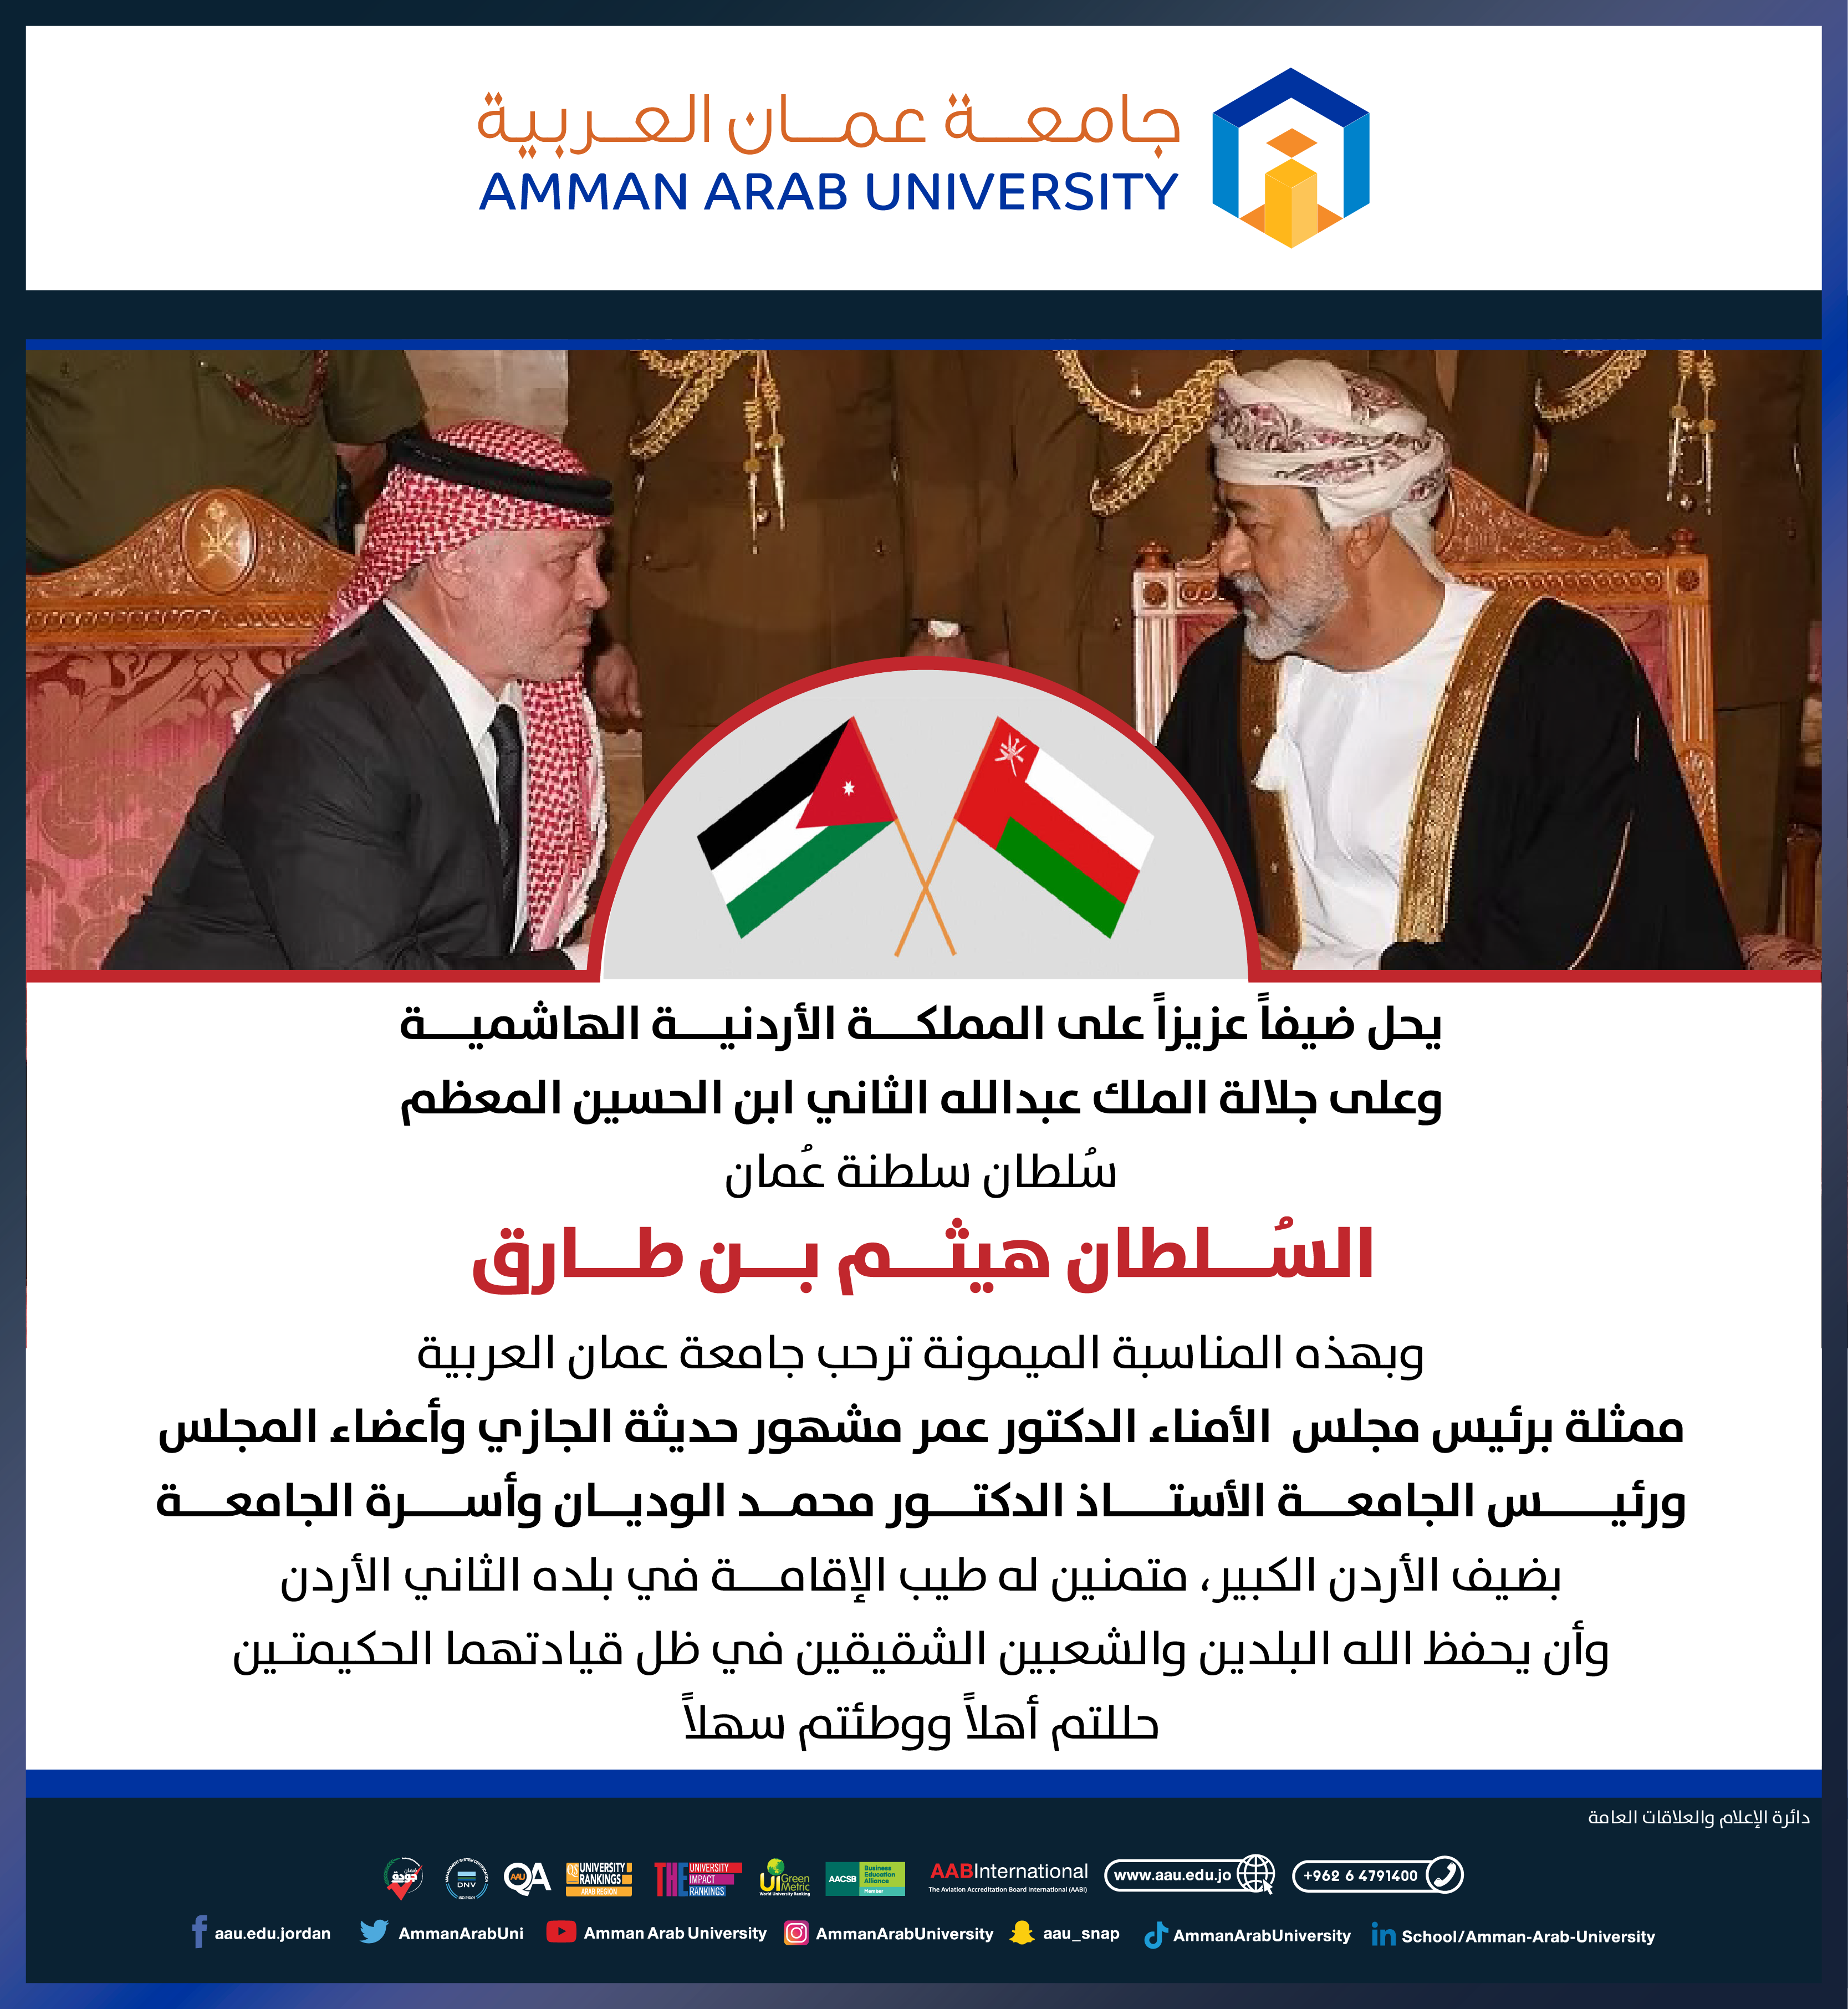 جامعة عمان العربية ترحب بضيف الأردن السلطان هيثم بن طارق